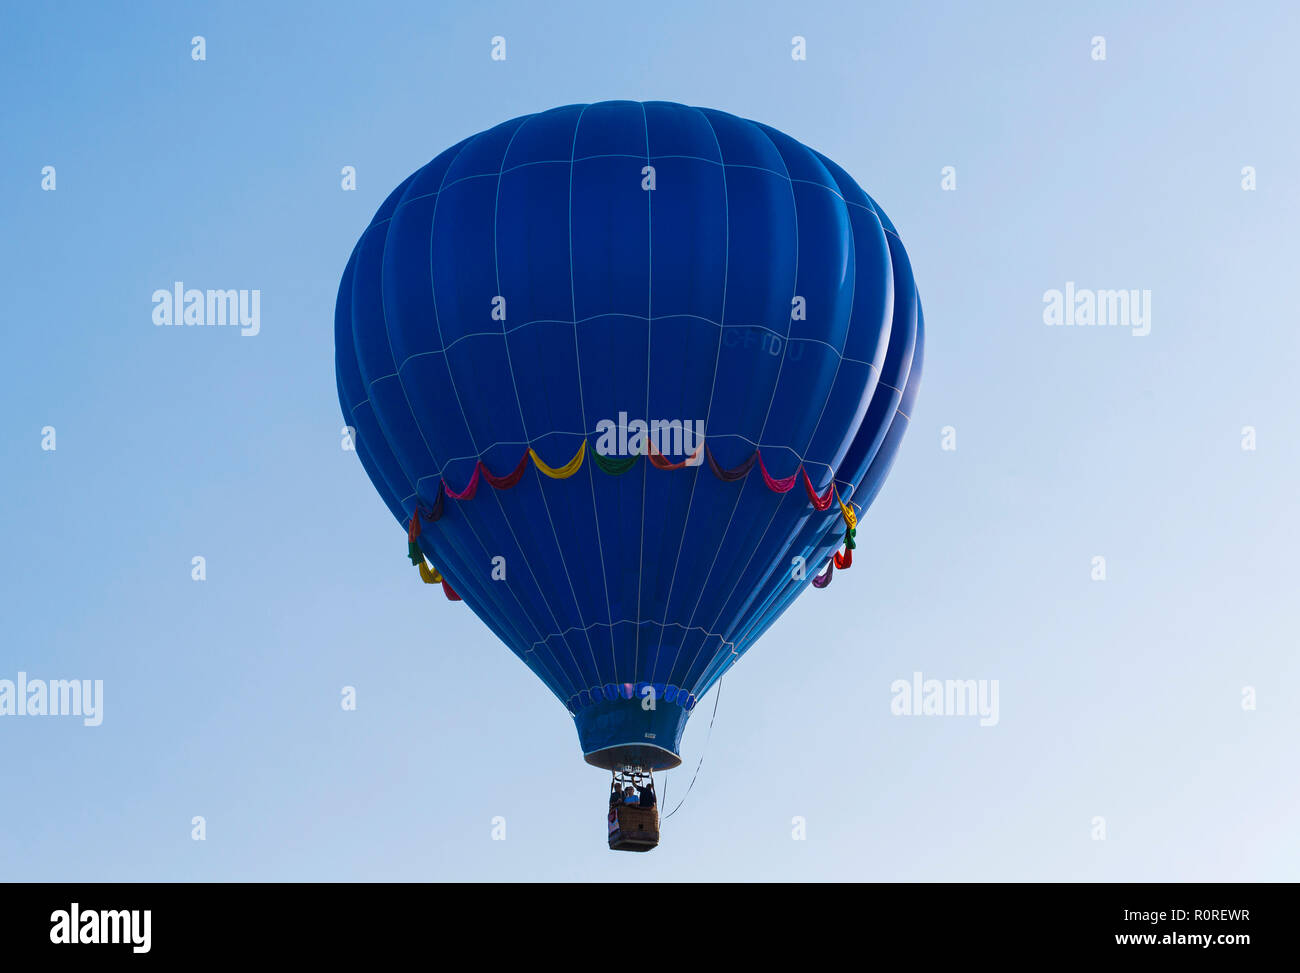 Hot air balloon, Quebec, Canada Stock Photo